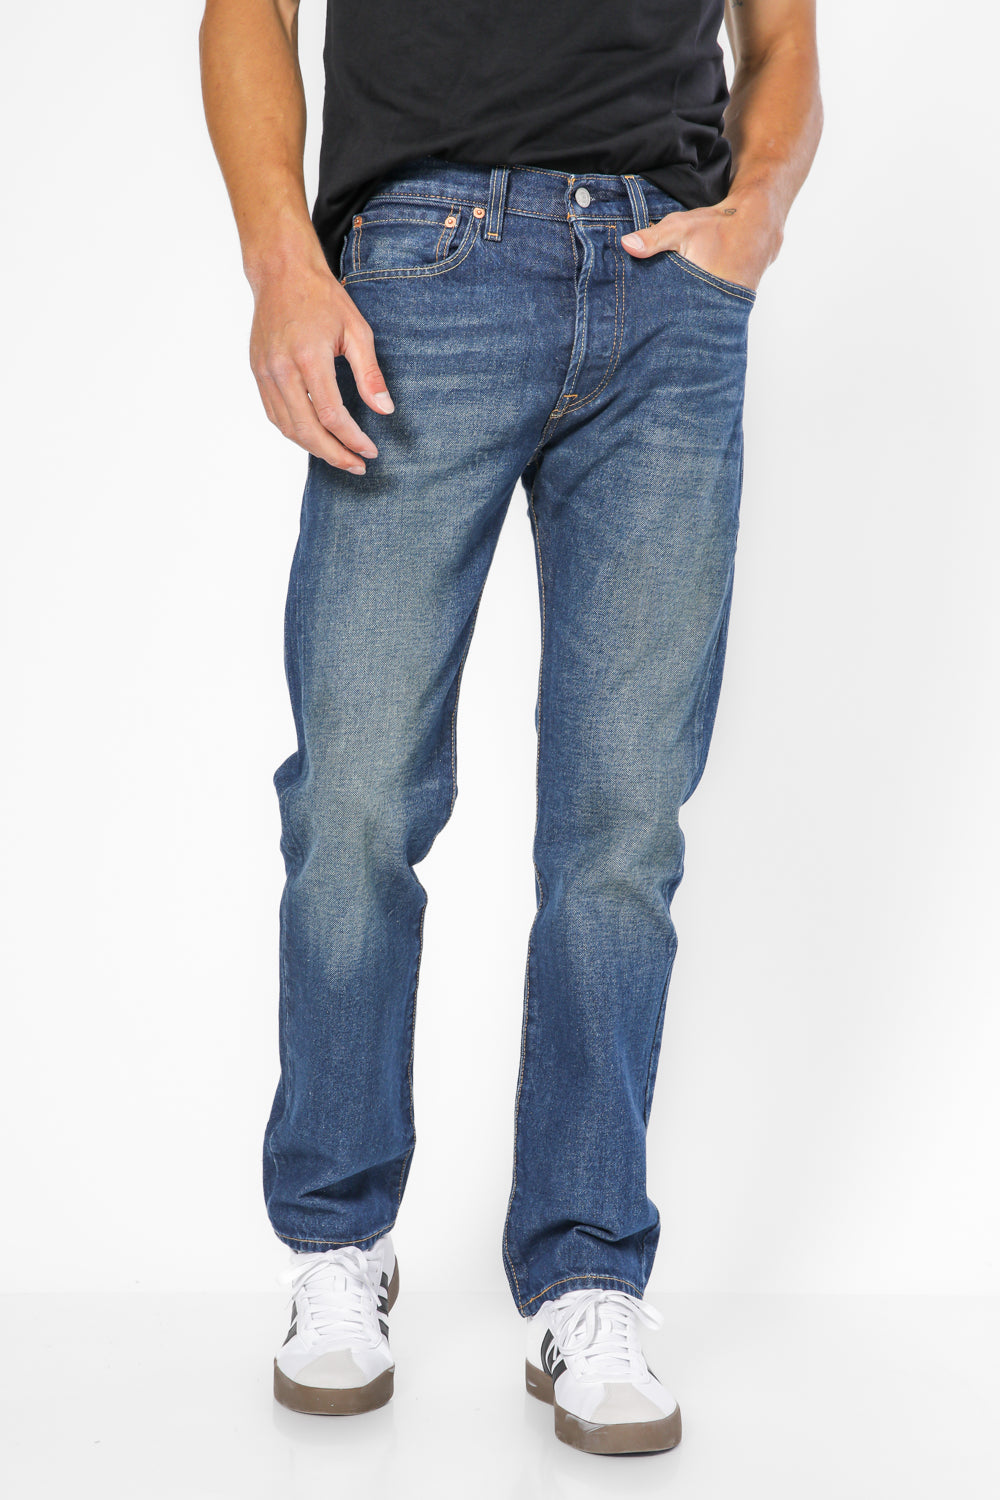 ג'ינס 501 בצבע כחול